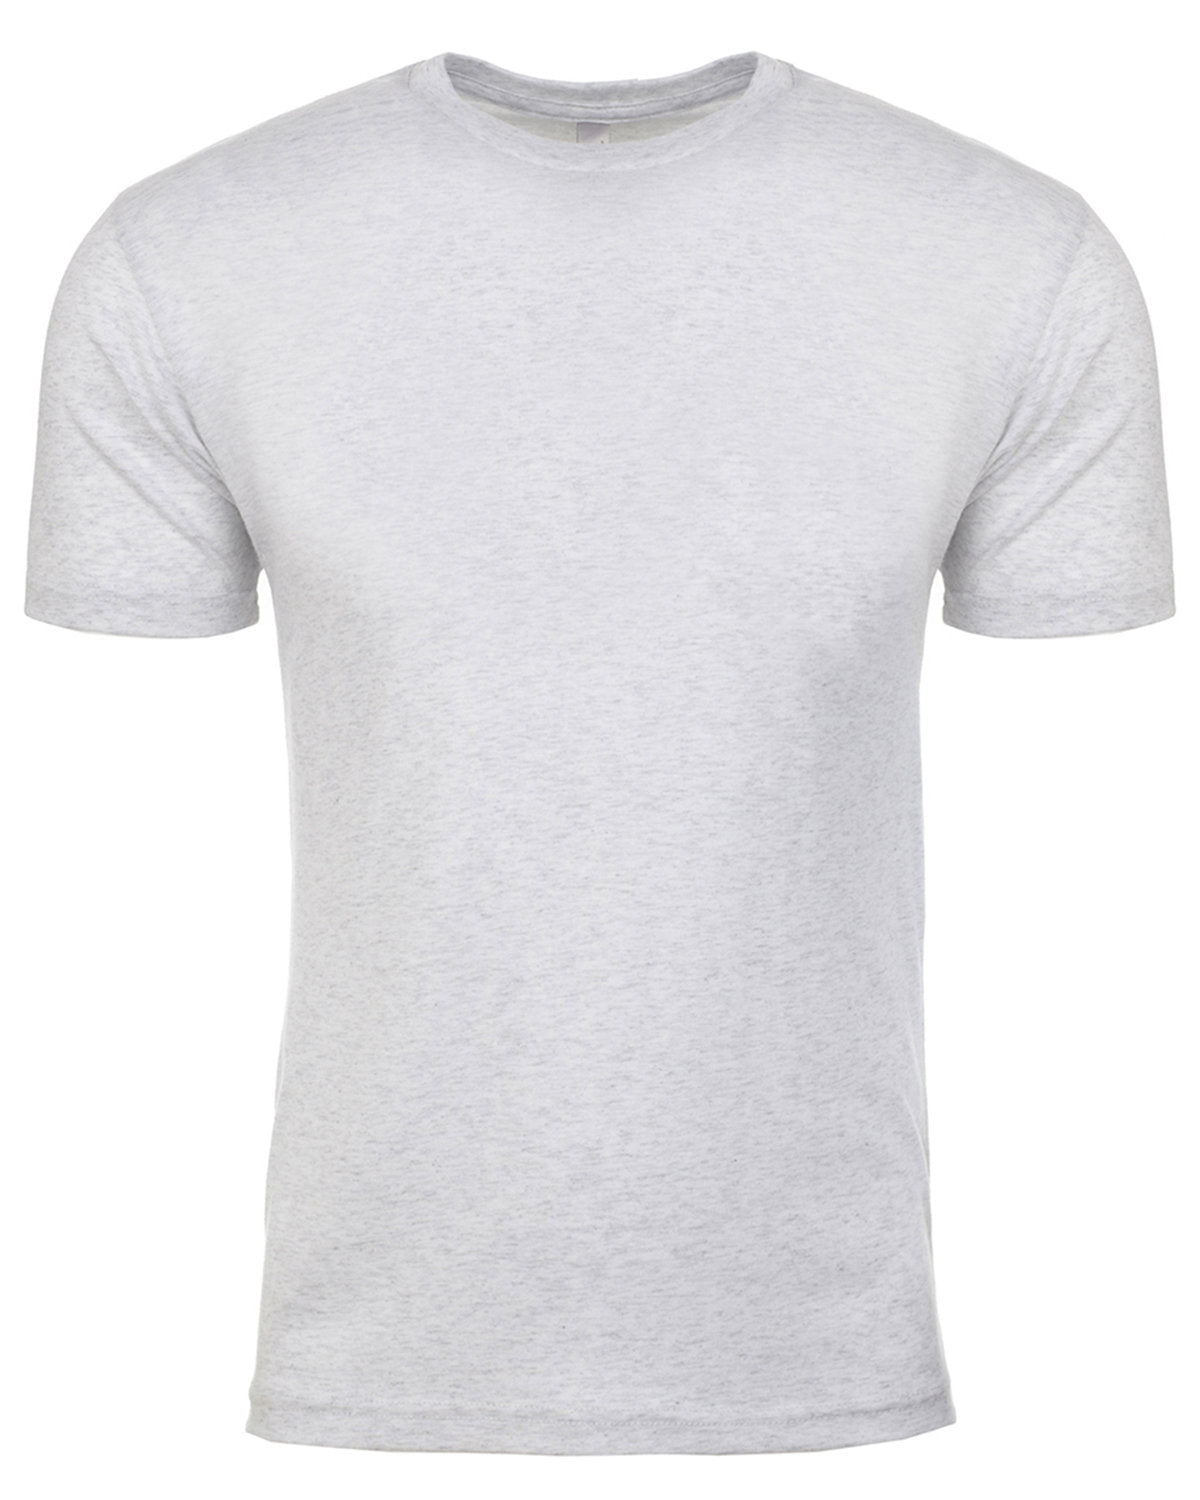 601010-T Camiseta Siguiente Nivel Unisex